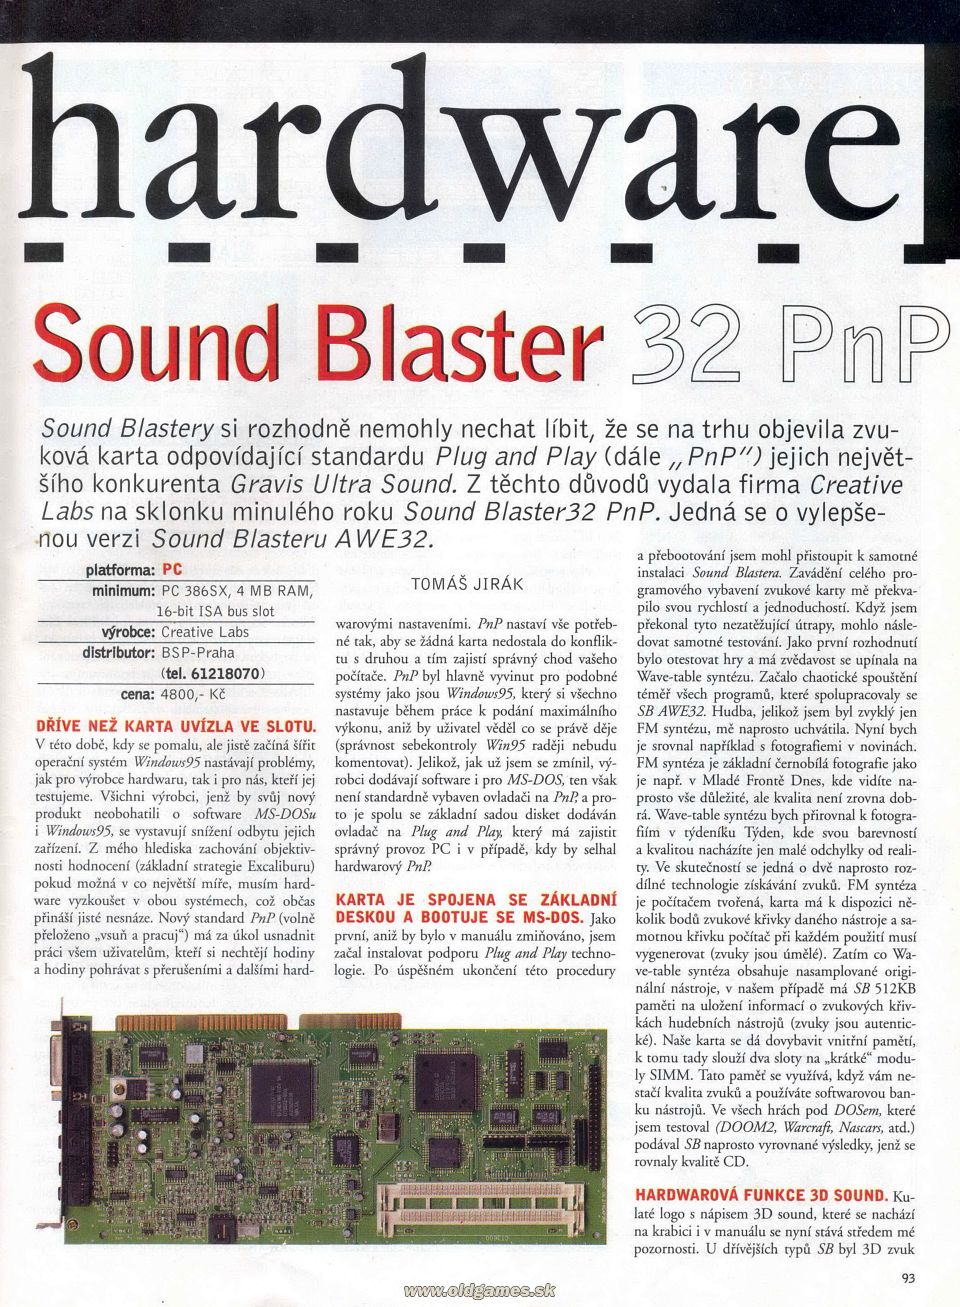 Hardware: Sound Blaster 32 PnP